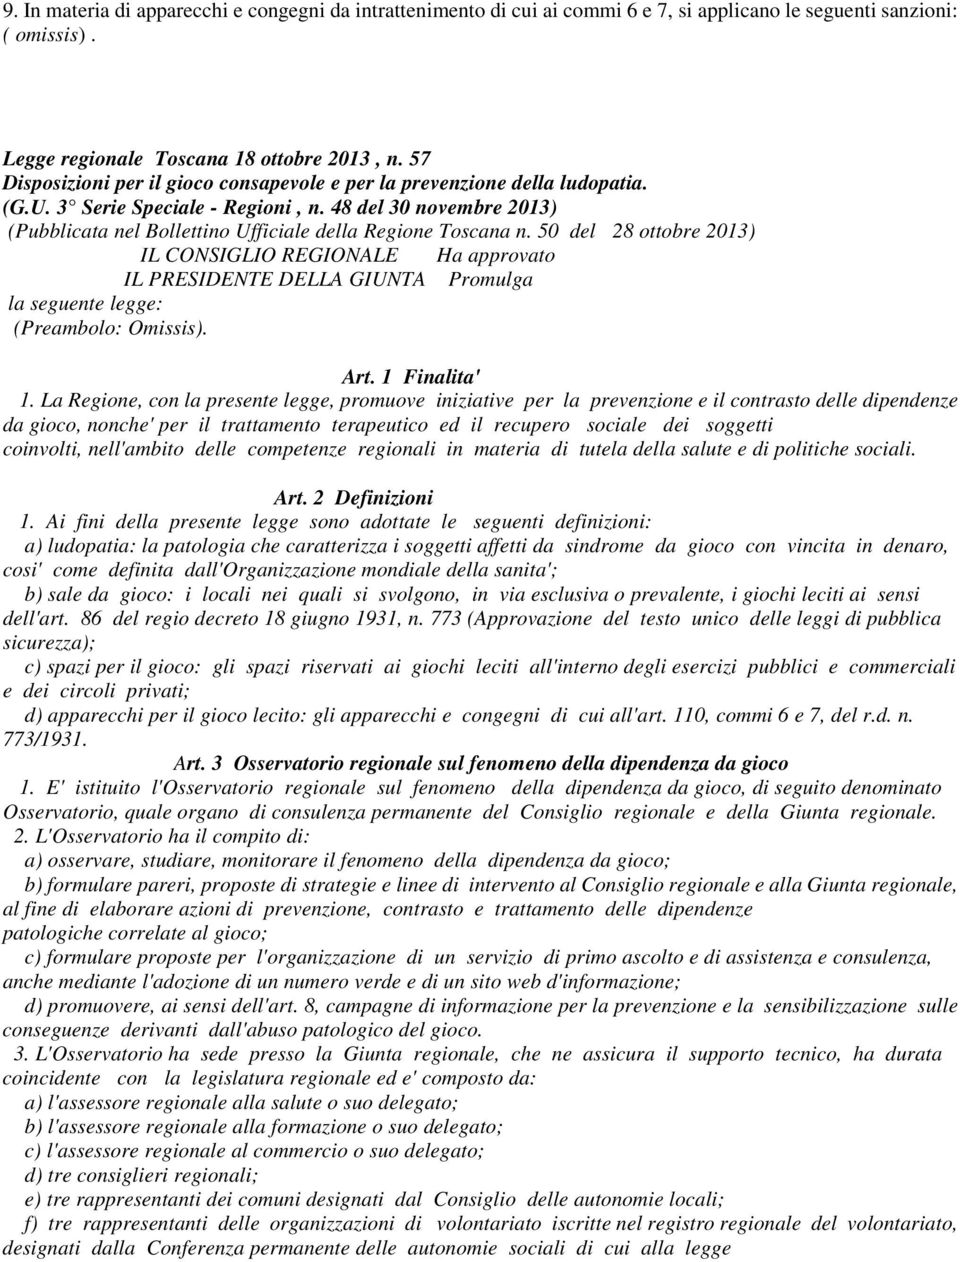 48 del 30 novembre 2013) (Pubblicata nel Bollettino Ufficiale della Regione Toscana n. 50 del 28 ottobre 2013) IL CONSIGLIO REGIONALE Ha approvato la seguente legge: (Preambolo: Omissis).